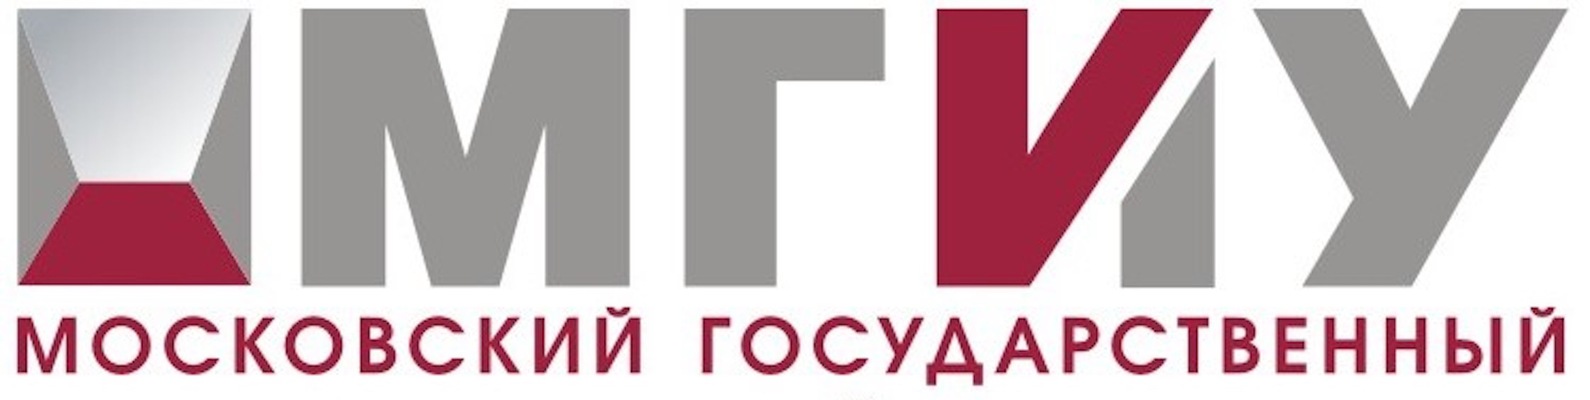 Логотип (Московский государственный индустриальный университет)